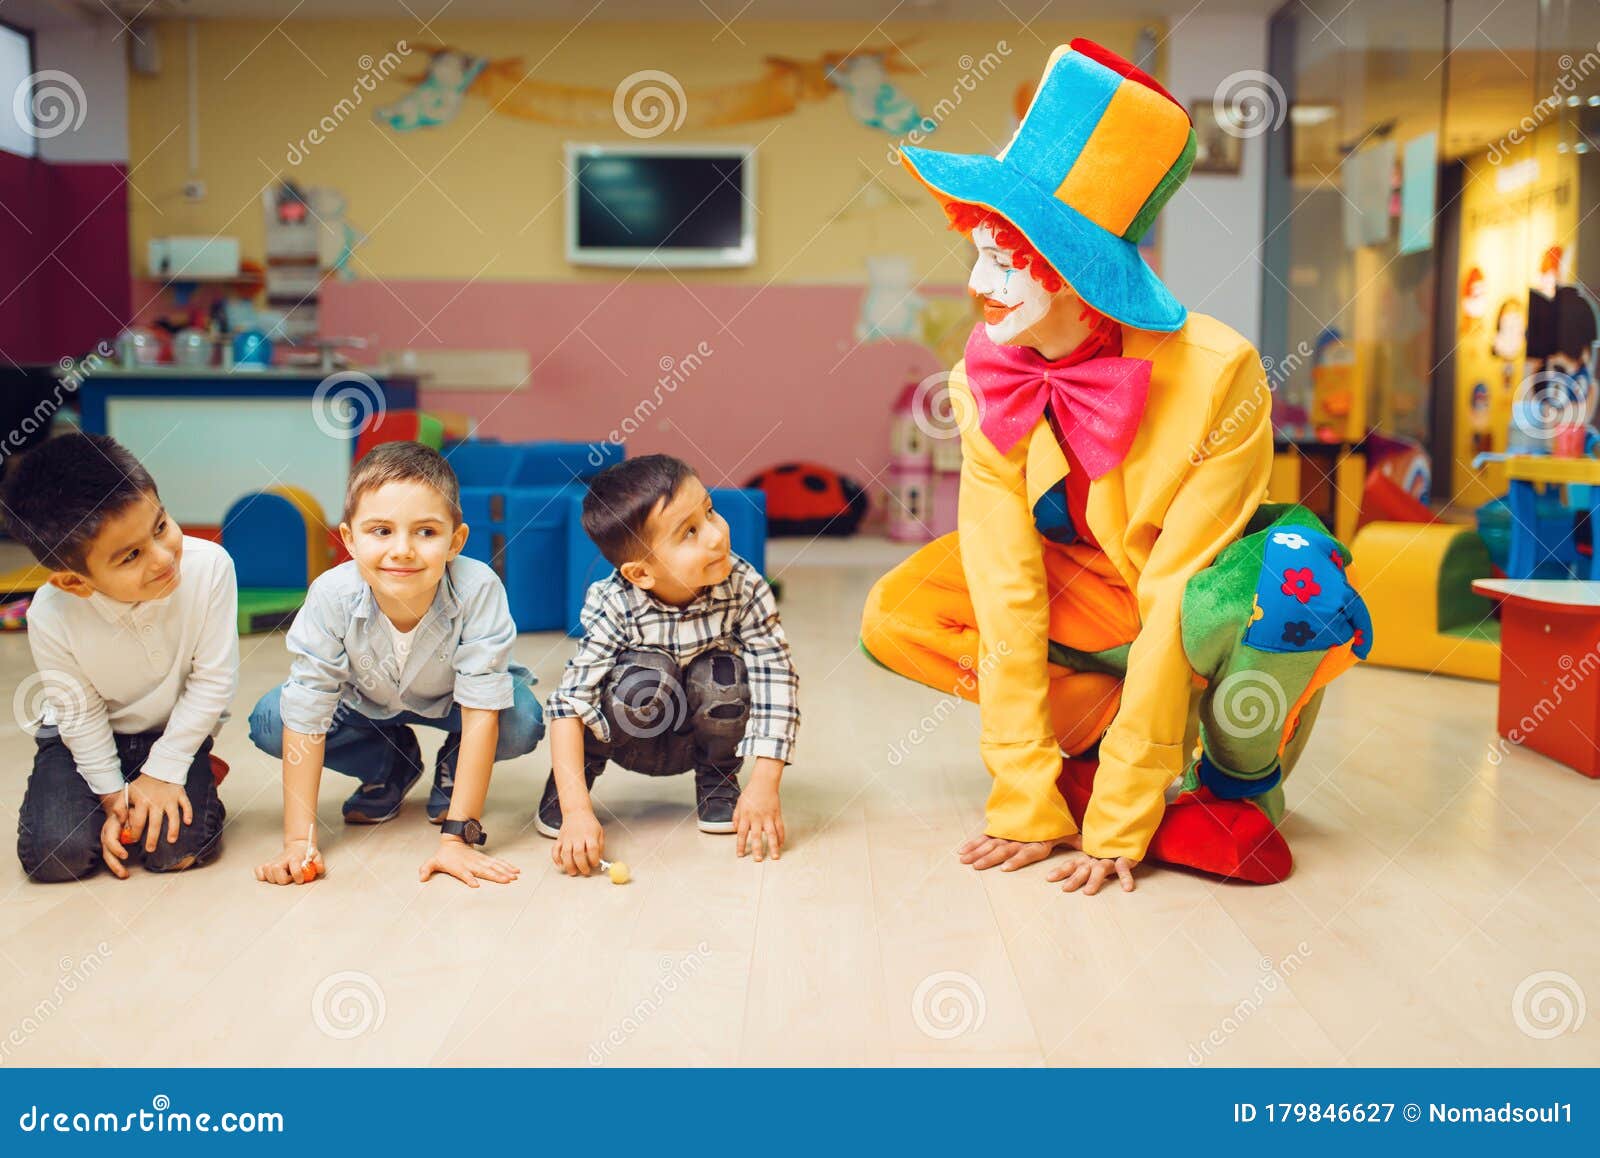 Brincadeira De Animador De Palhaços Com O Grupo De Meninos Imagem de Stock  - Imagem de feliz, interior: 179846627